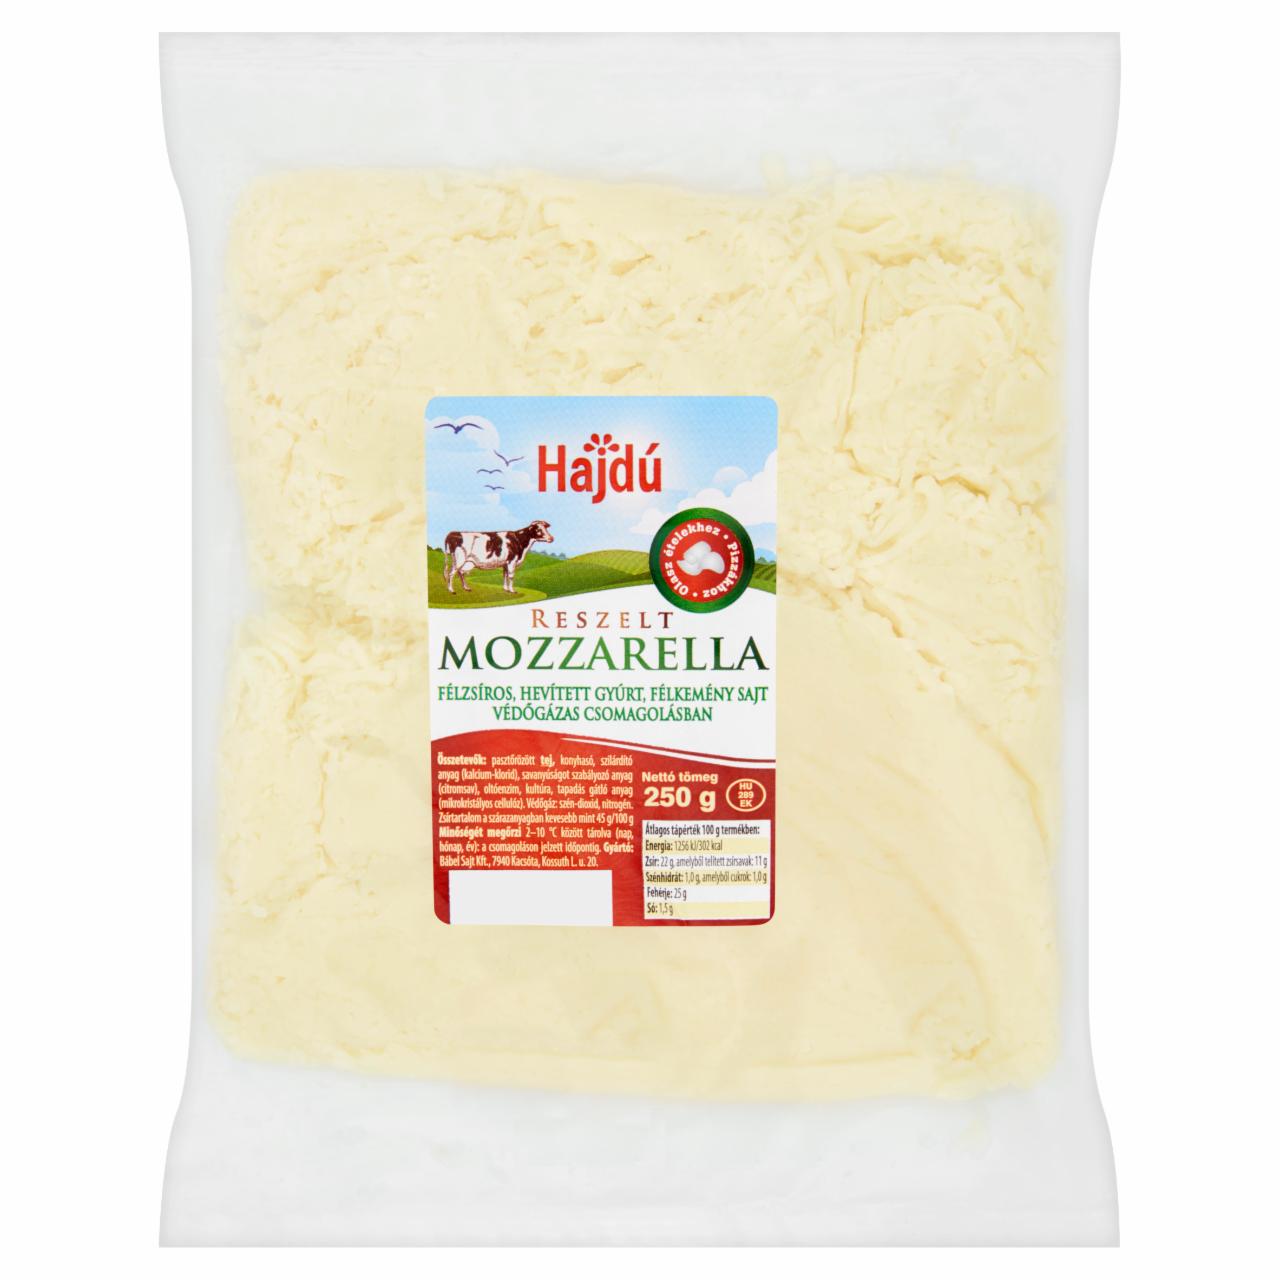 Képek - Hajdú félzsíros, félkemény, reszelt mozzarella sajt 250 g